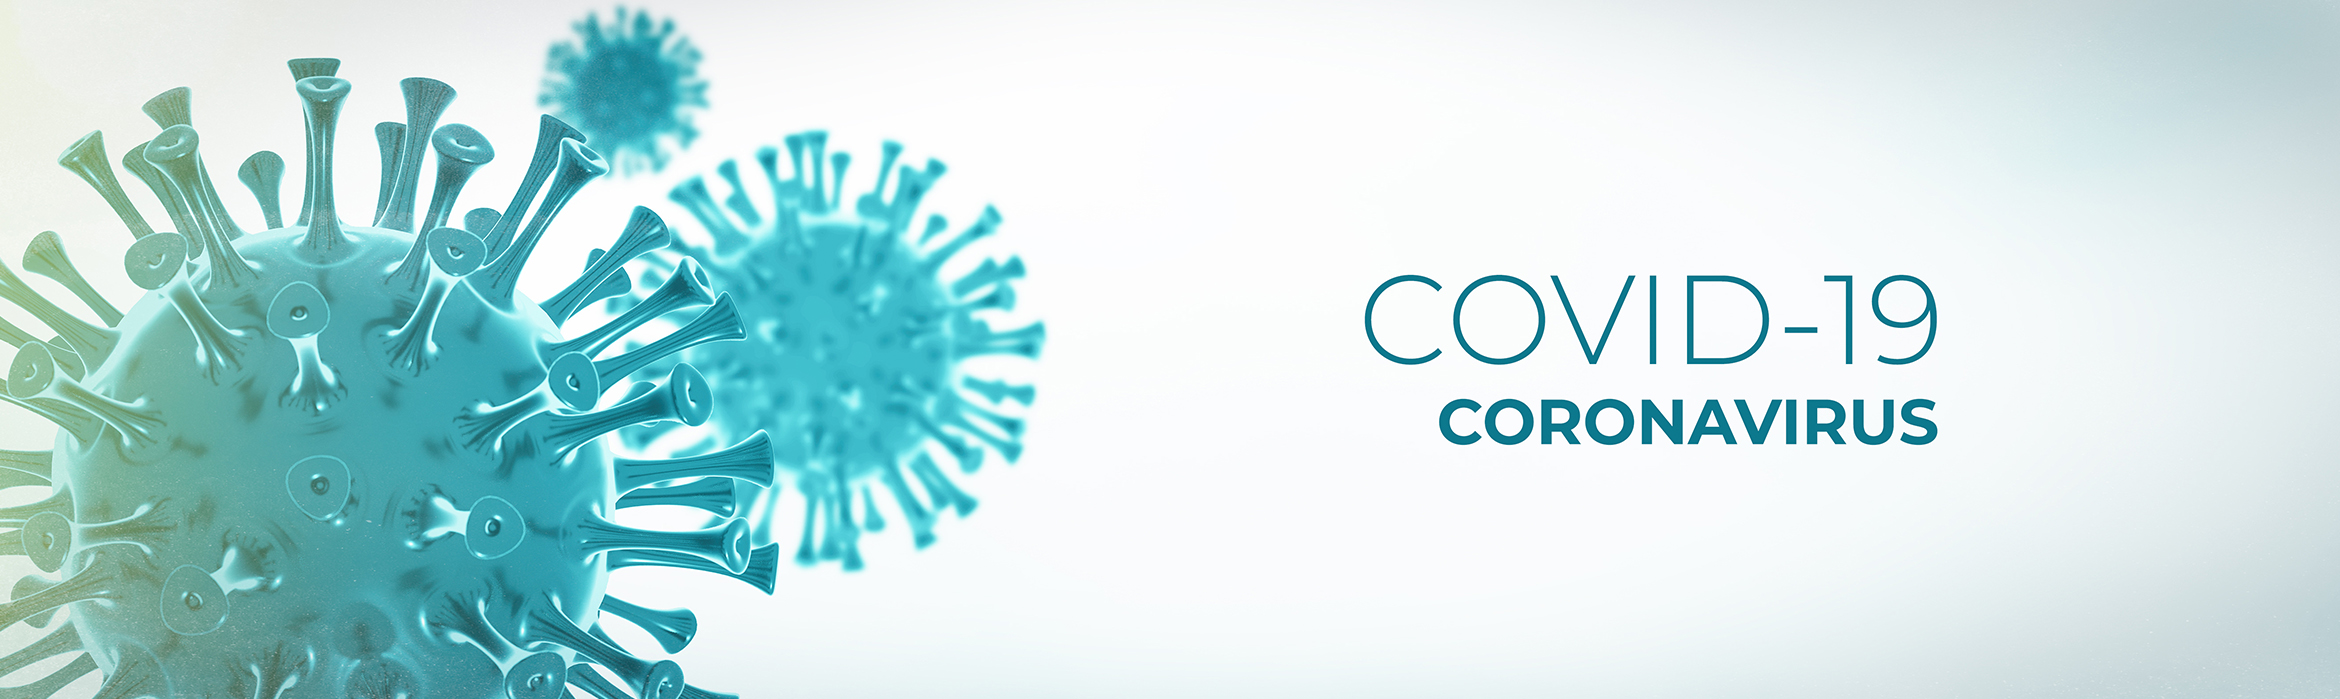 Virus del covid-19